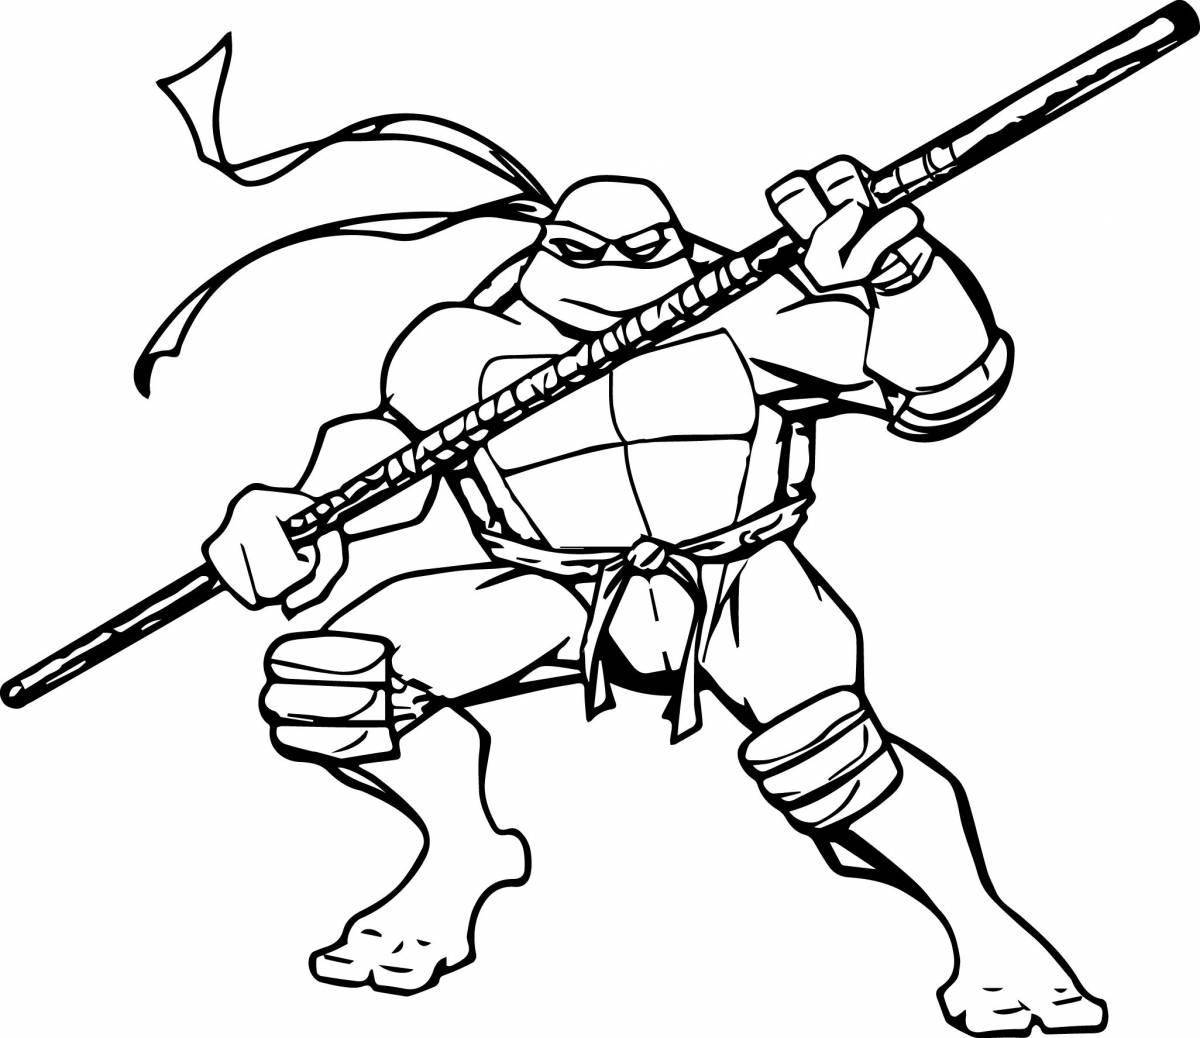 Ninja turtle #6